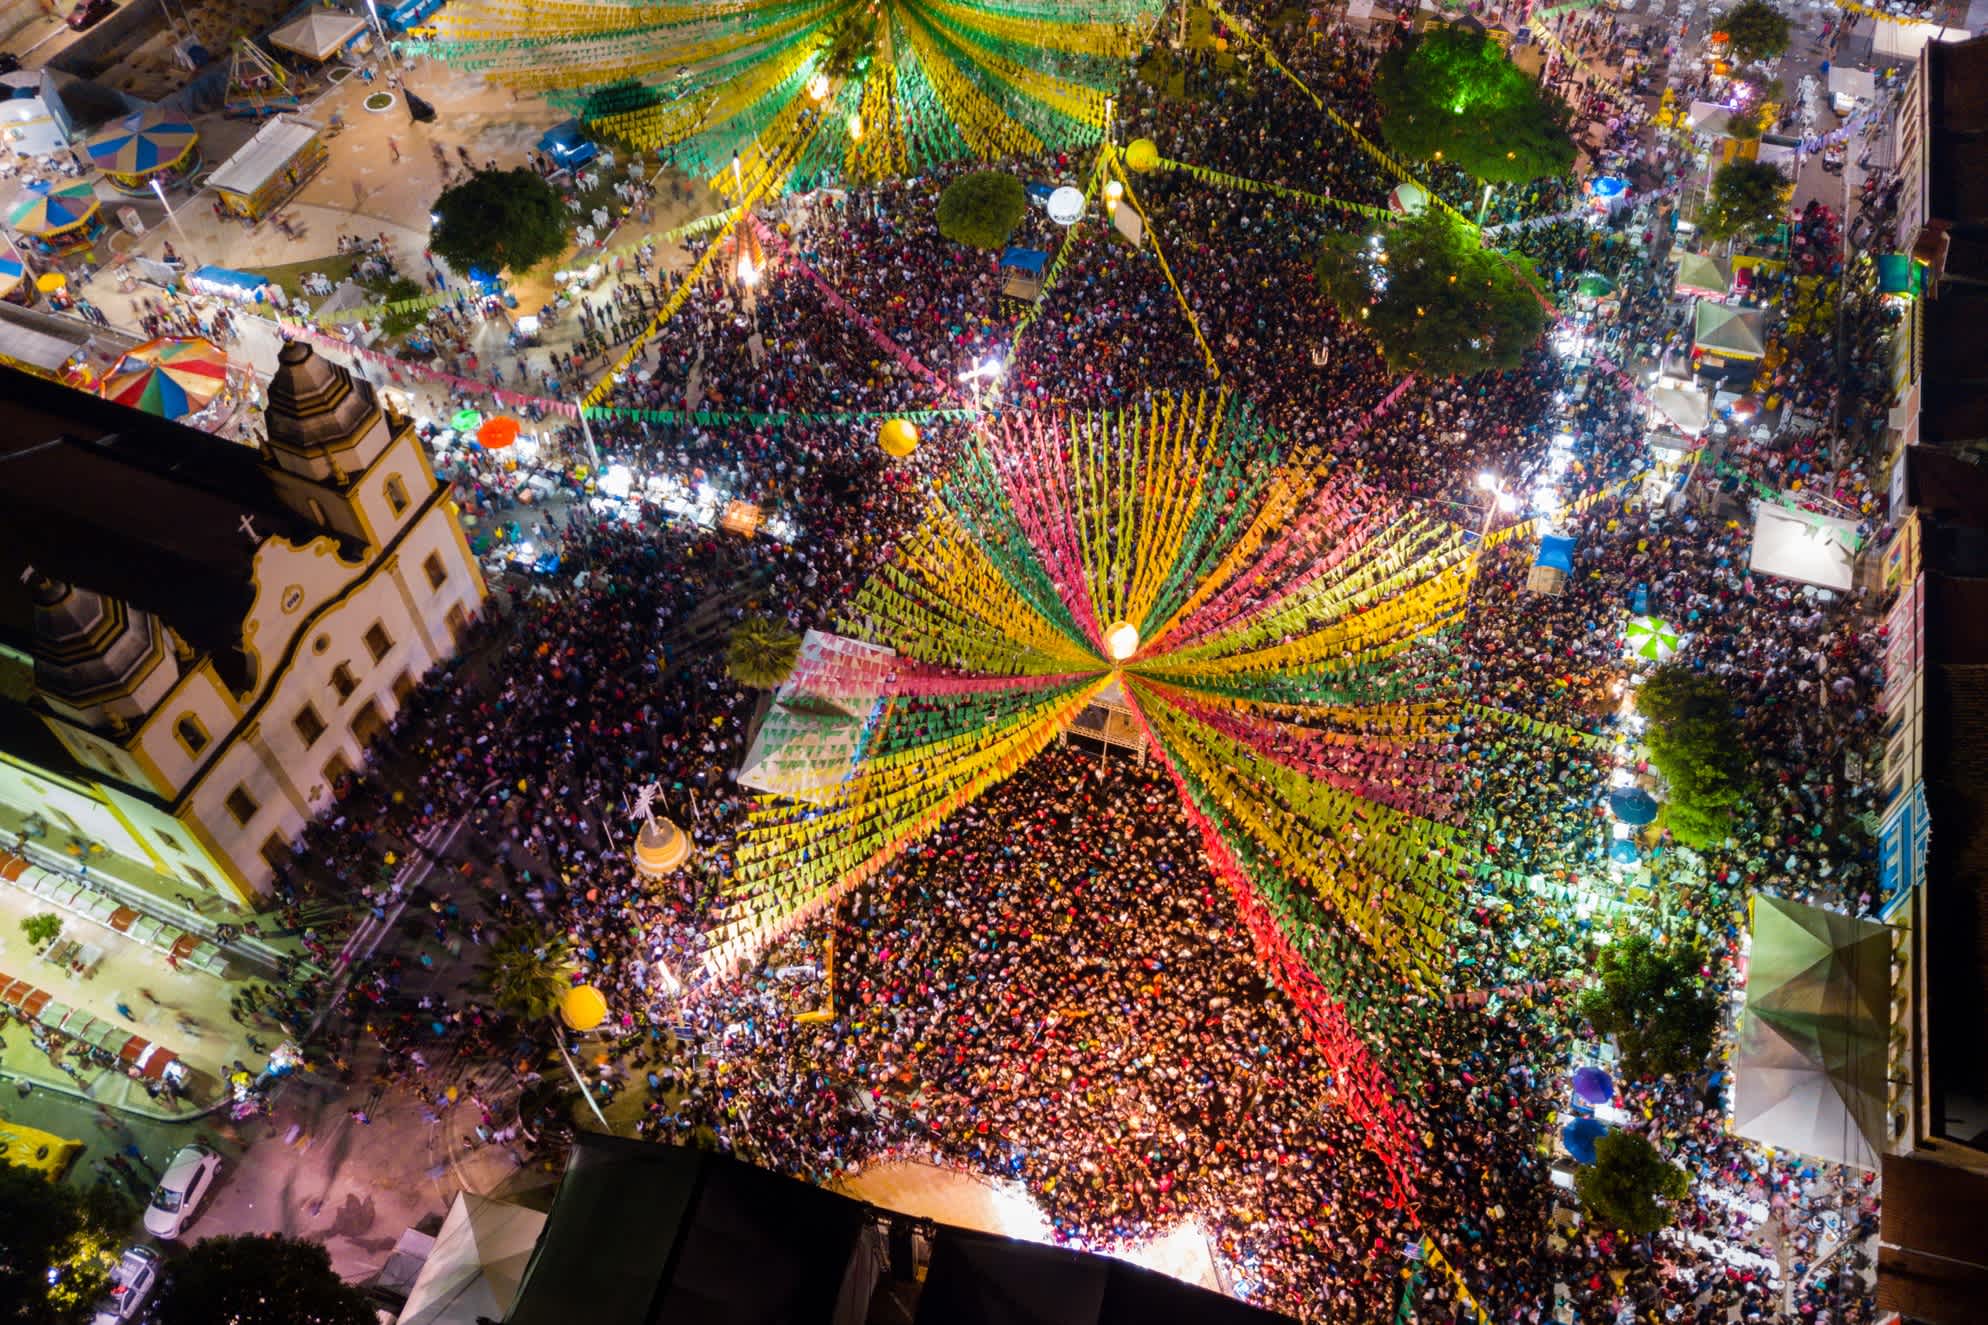 Place décorée pour la fête au Brésil avec beaucoup de monde